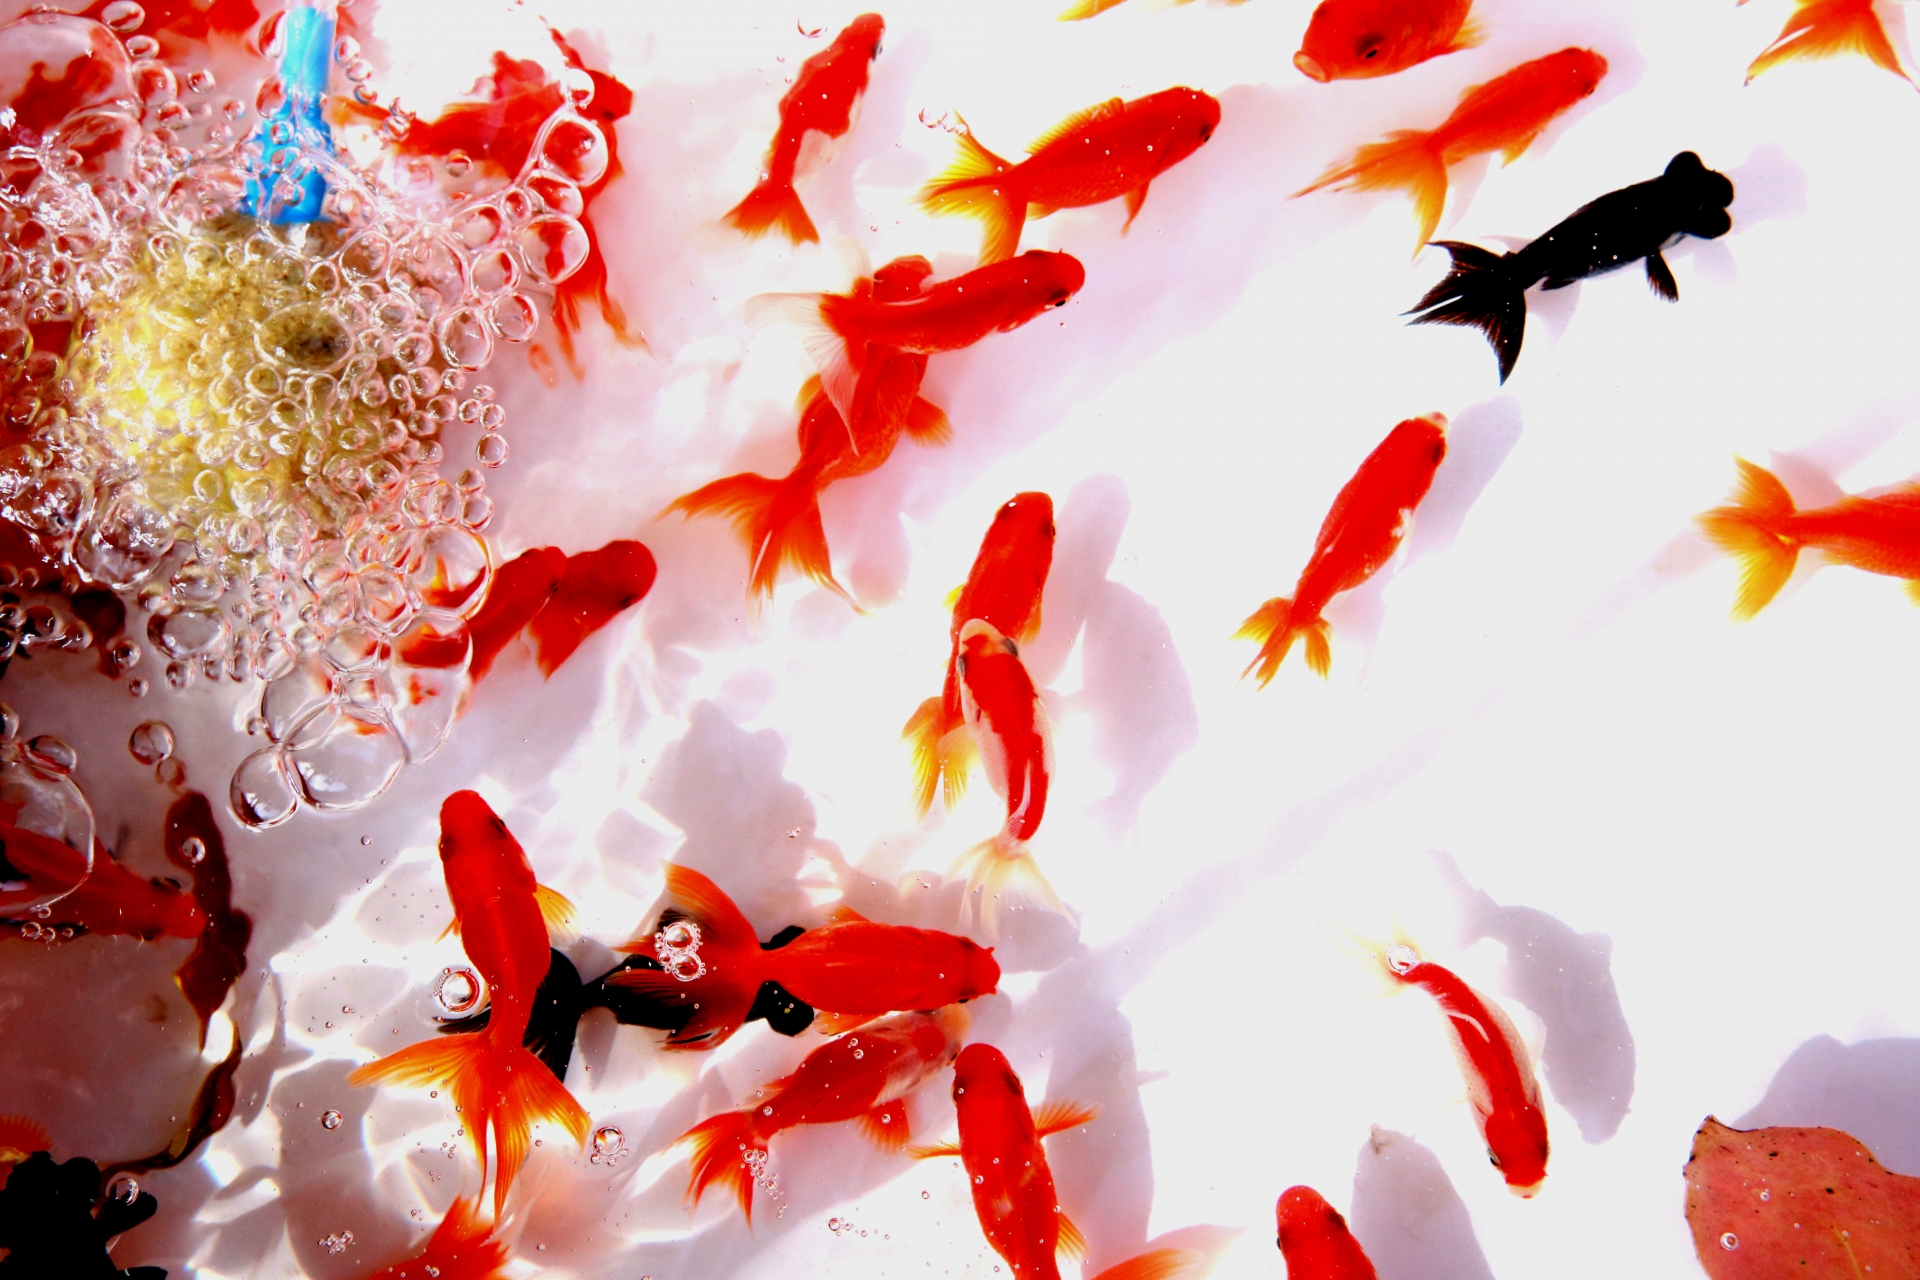 金魚の俳句 選 日本の夏の風物詩 金魚に関する季語を含んだ有名 一般俳句例 俳句の教科書 俳句の作り方 有名俳句の解説サイト